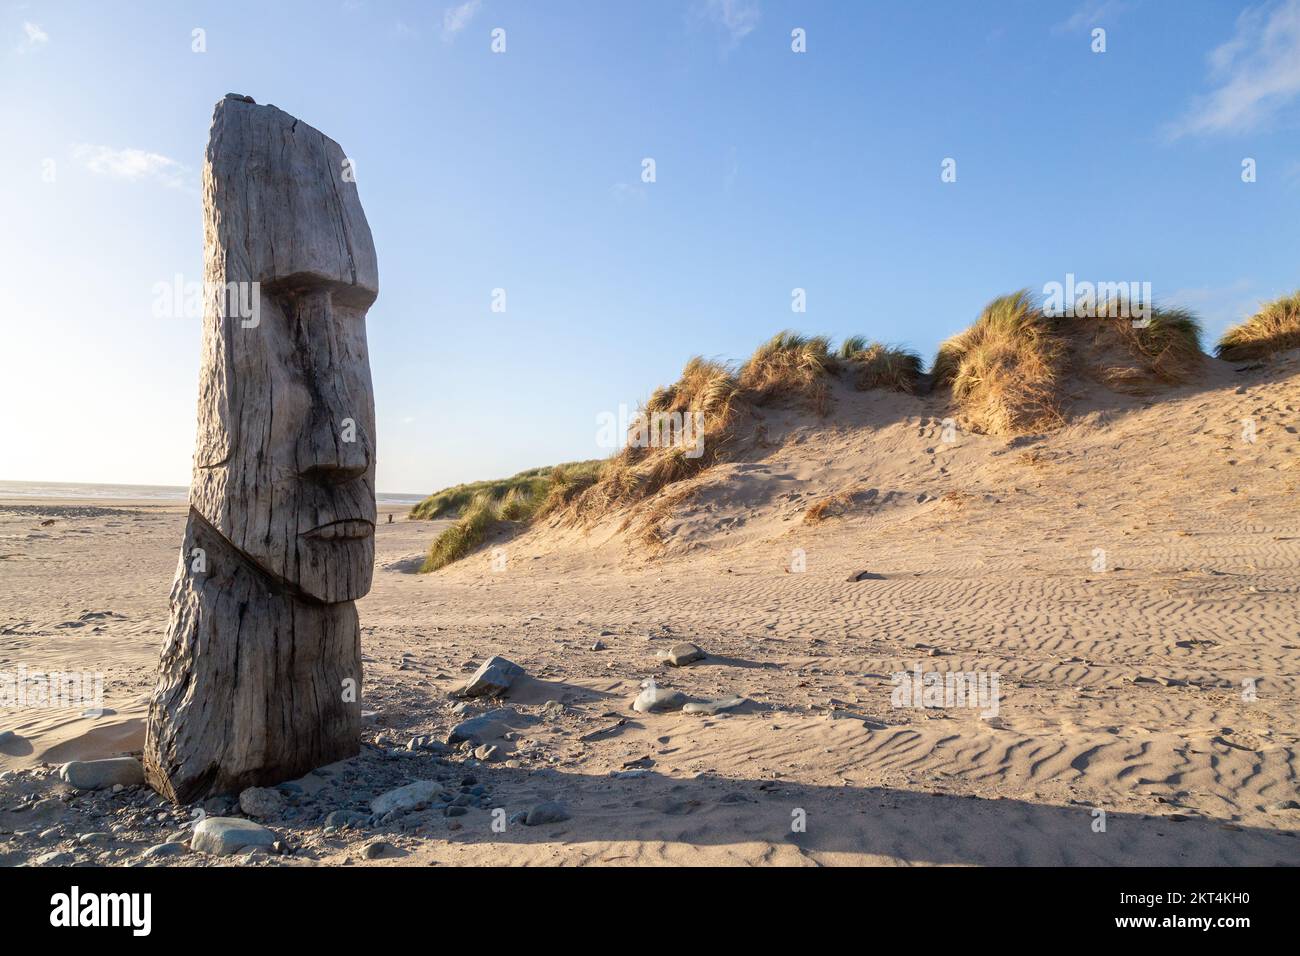 Statua in legno intagliata dell'uomo Maori dell'isola di Pasqua sulla spiaggia di Barmouth Foto Stock